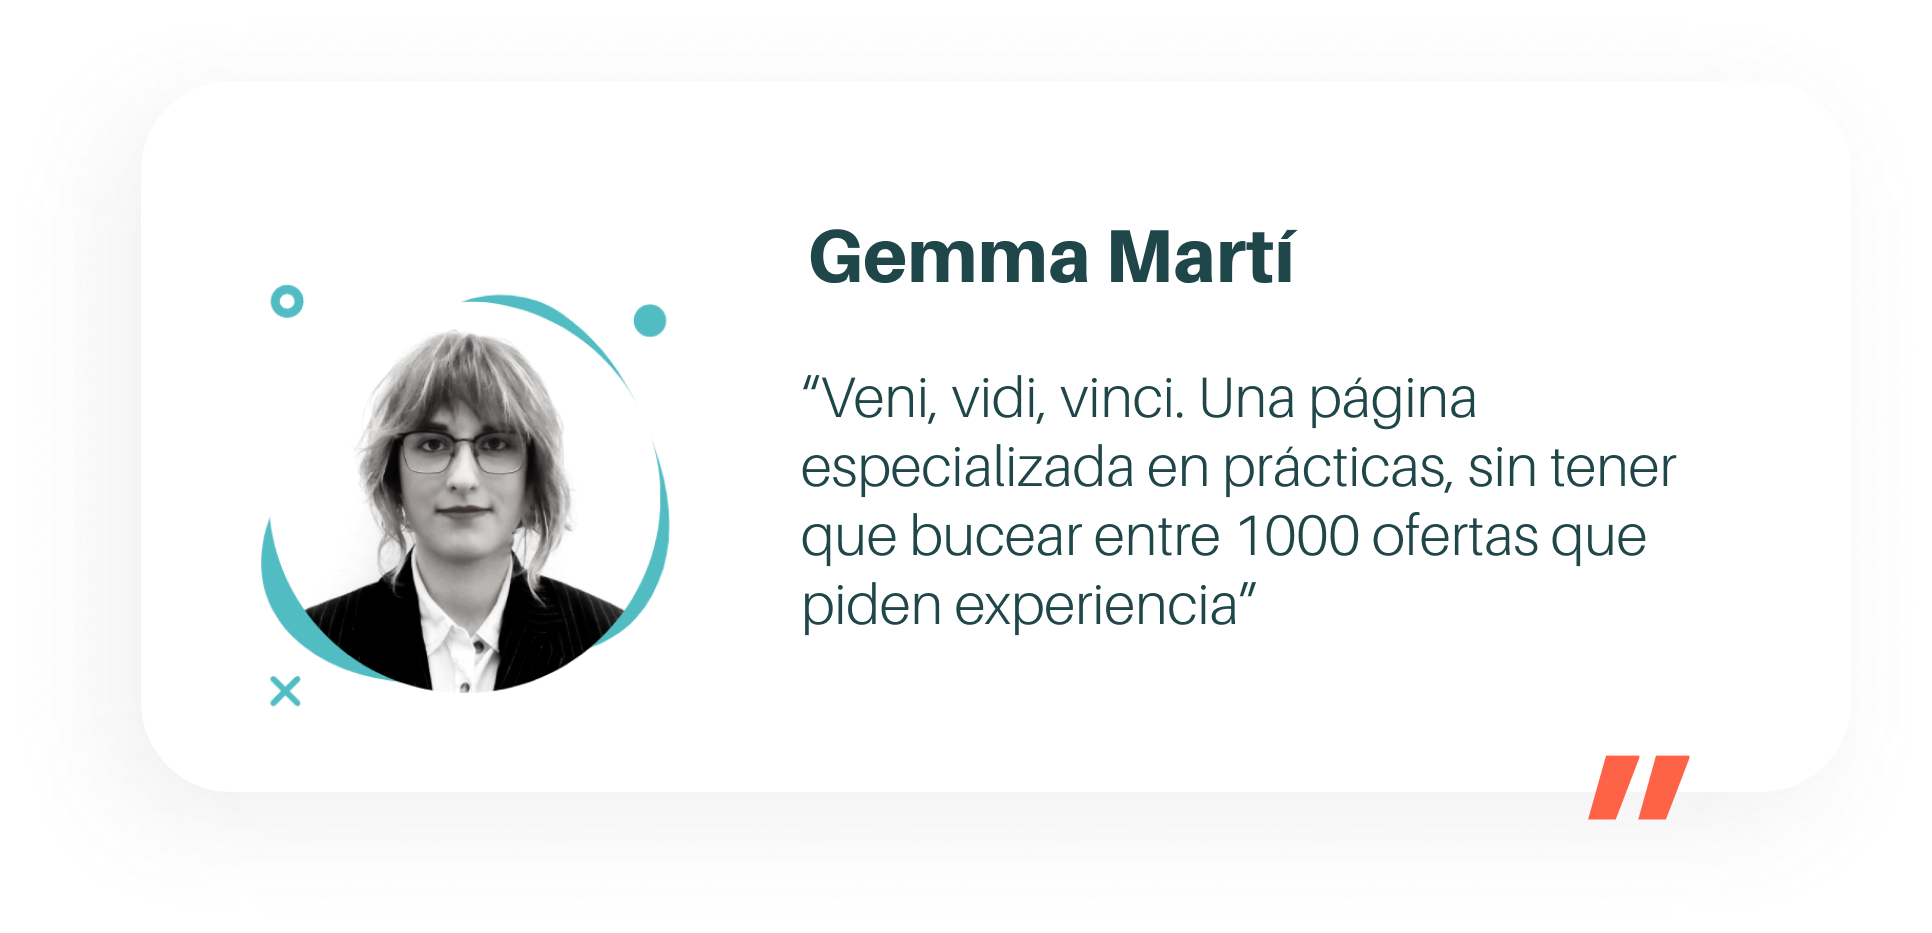 Testimonio Gemma Martí Veni, vidi, vinci. Una página especializada en prácticas, sin tener que bucear entre 1000 ofertas que piden experiencia